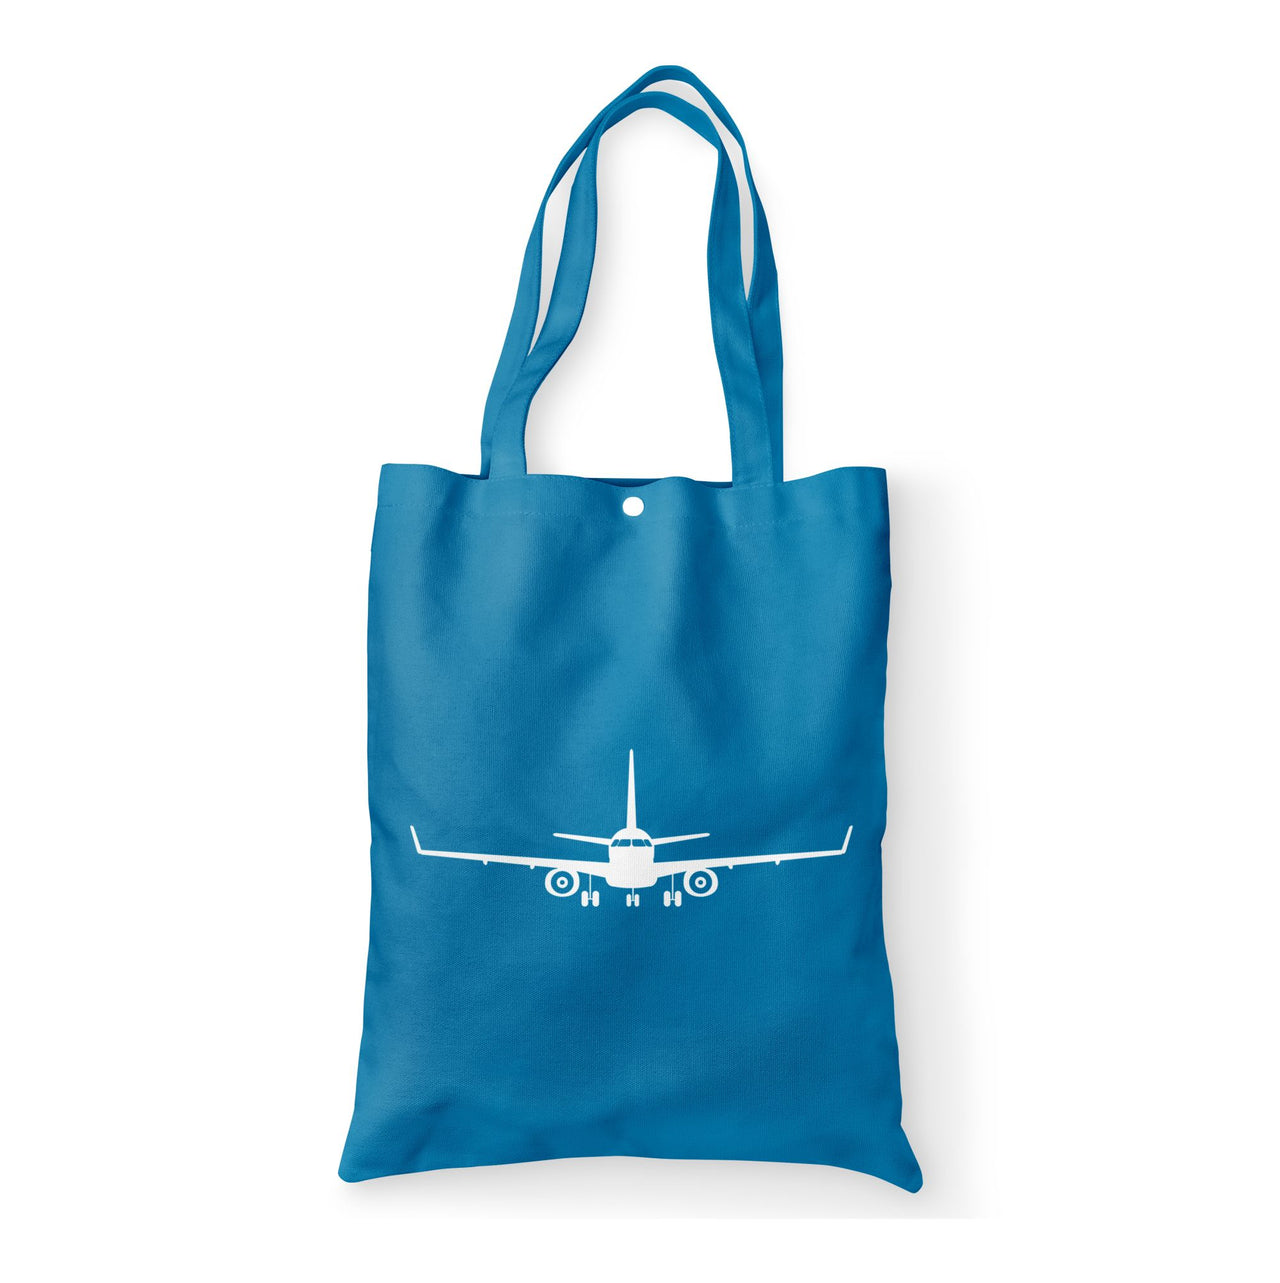 Embraer E-190 Silhouette Plane Designed Tote Bags